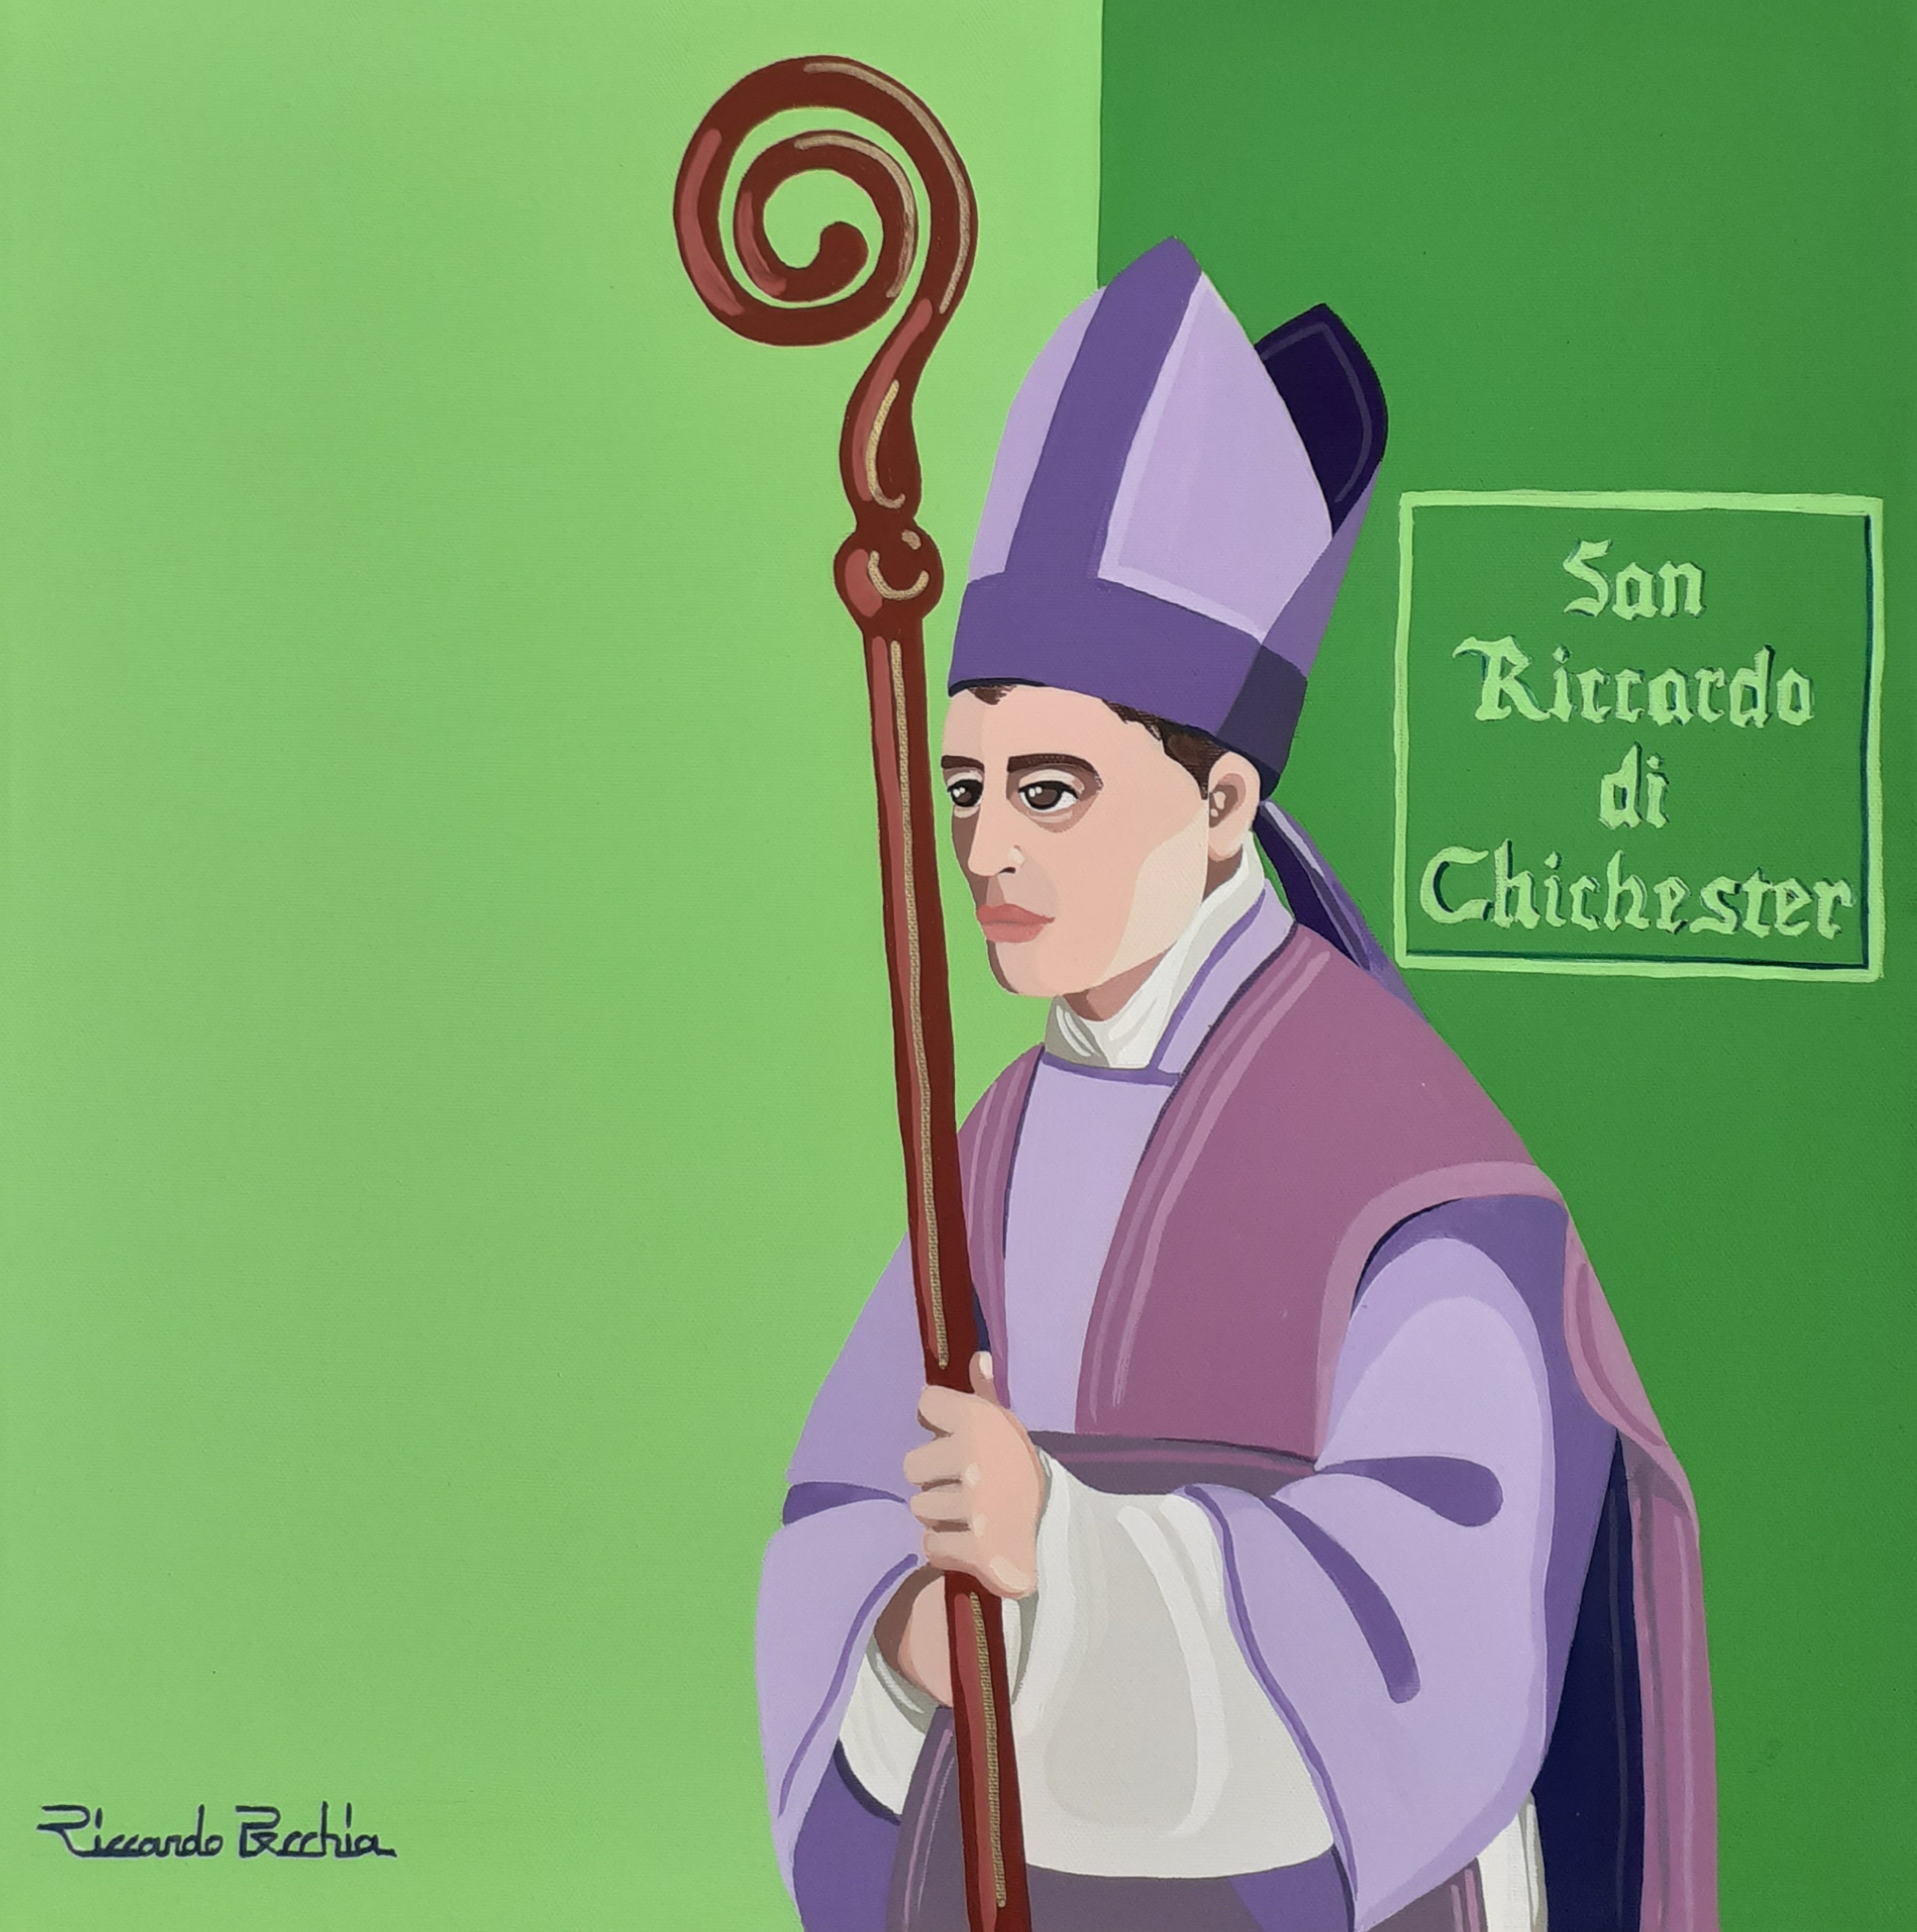 San Riccardo di Chichester (Riccardo Pecchia)